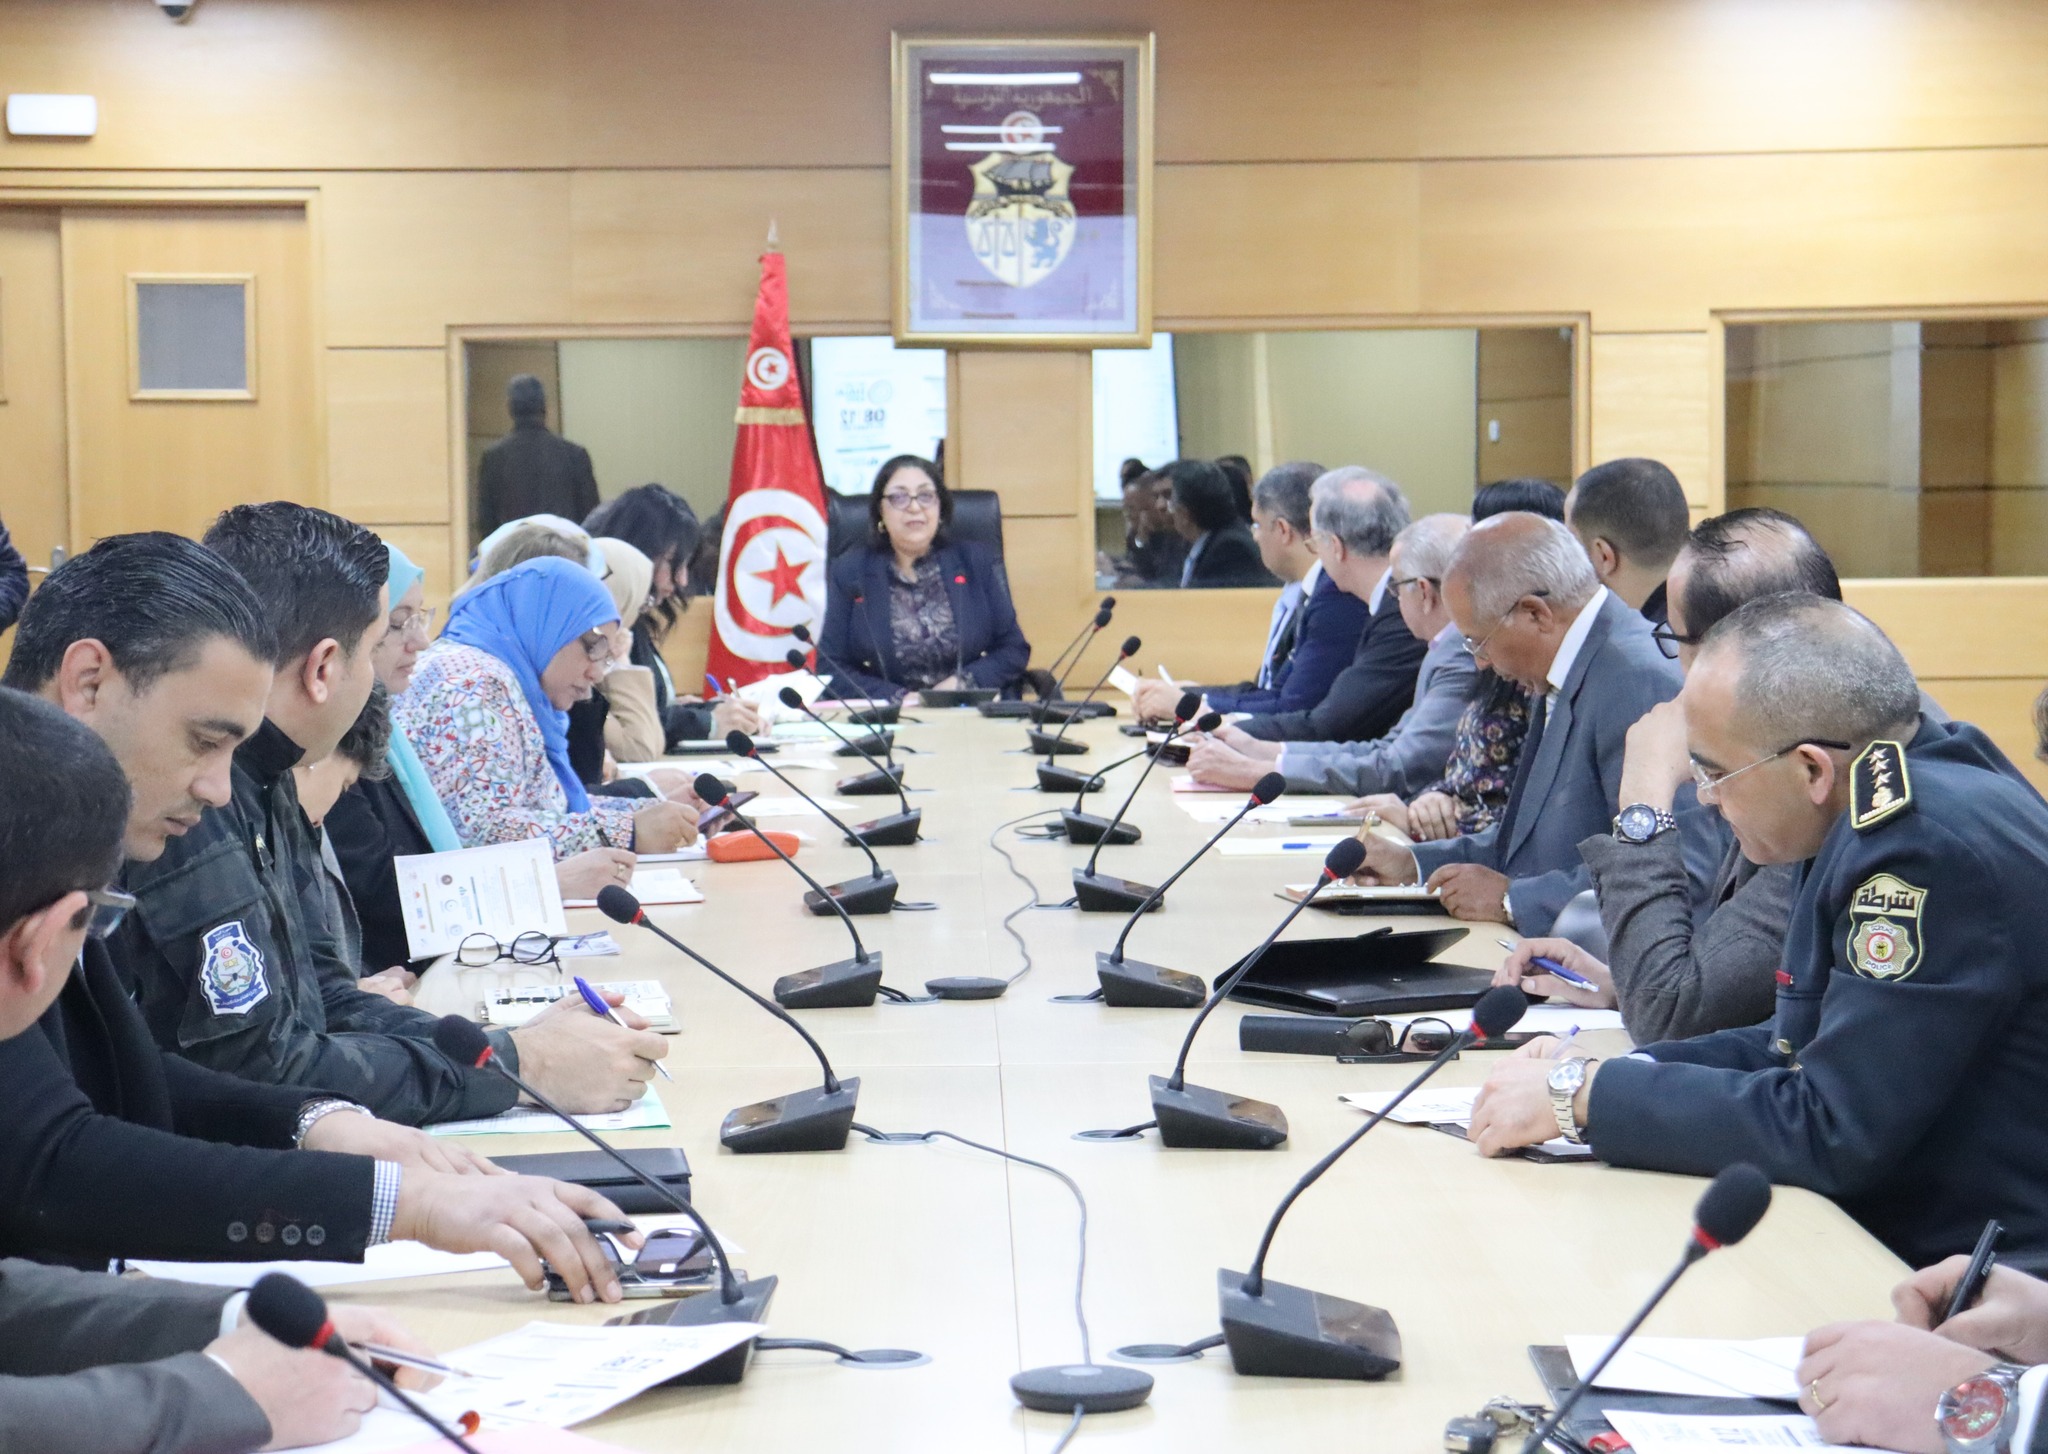 ستحتضنه تونس: وزيرة التجارة تترأس الاجتماع التنسيقي الأول للجنة تنظيم معرض الحلال لمنظمة التعاون الإسلامي